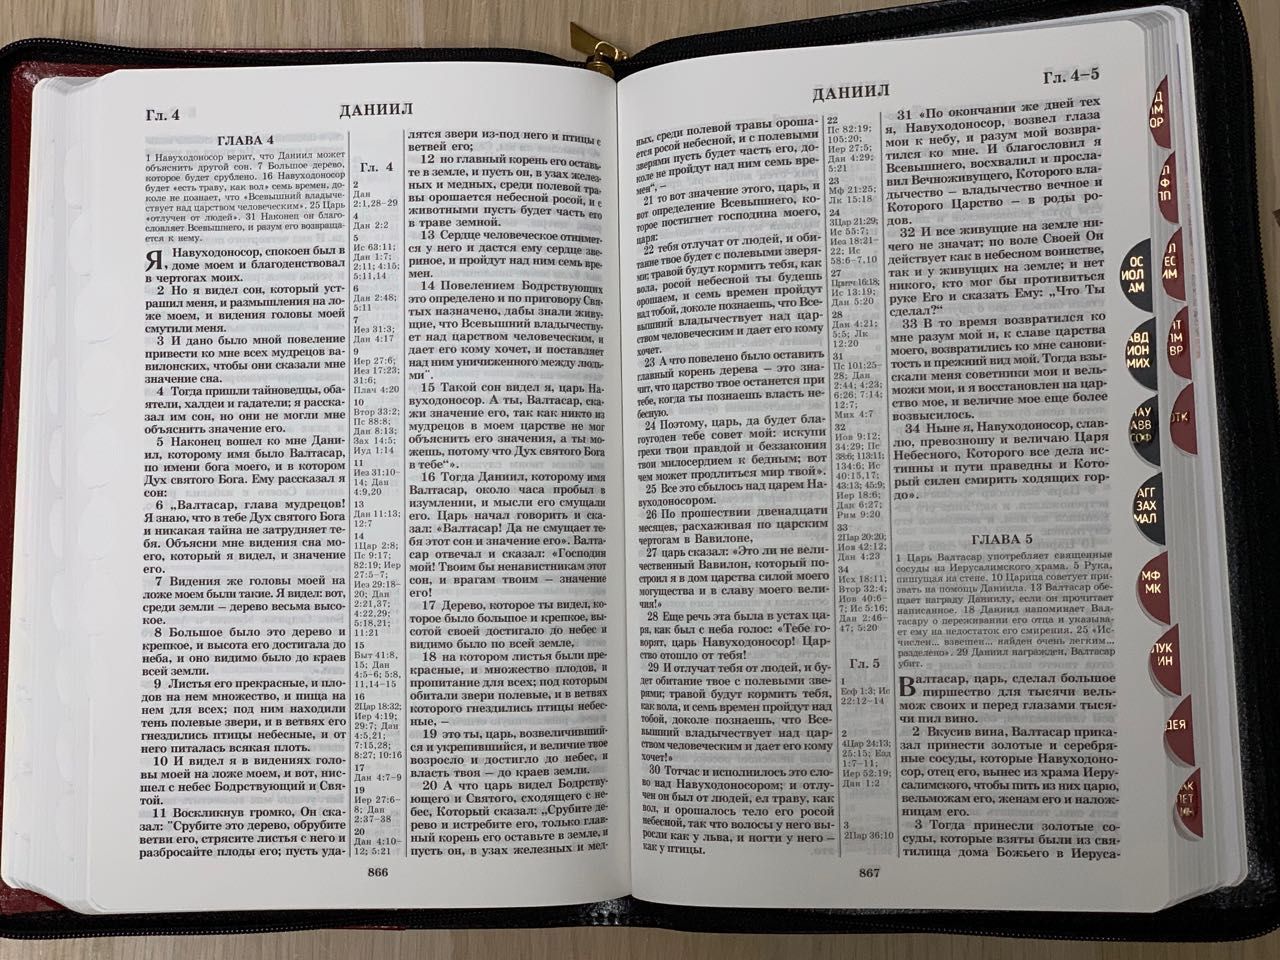 БИБЛИЯ 077DTzti формат, переплет из натуральной кожи на молнии с индексами, надпись золотом "Библия", цвет черный/ бордо металлик, большой формат, 180*260 мм, цветные карты, крупный шрифт